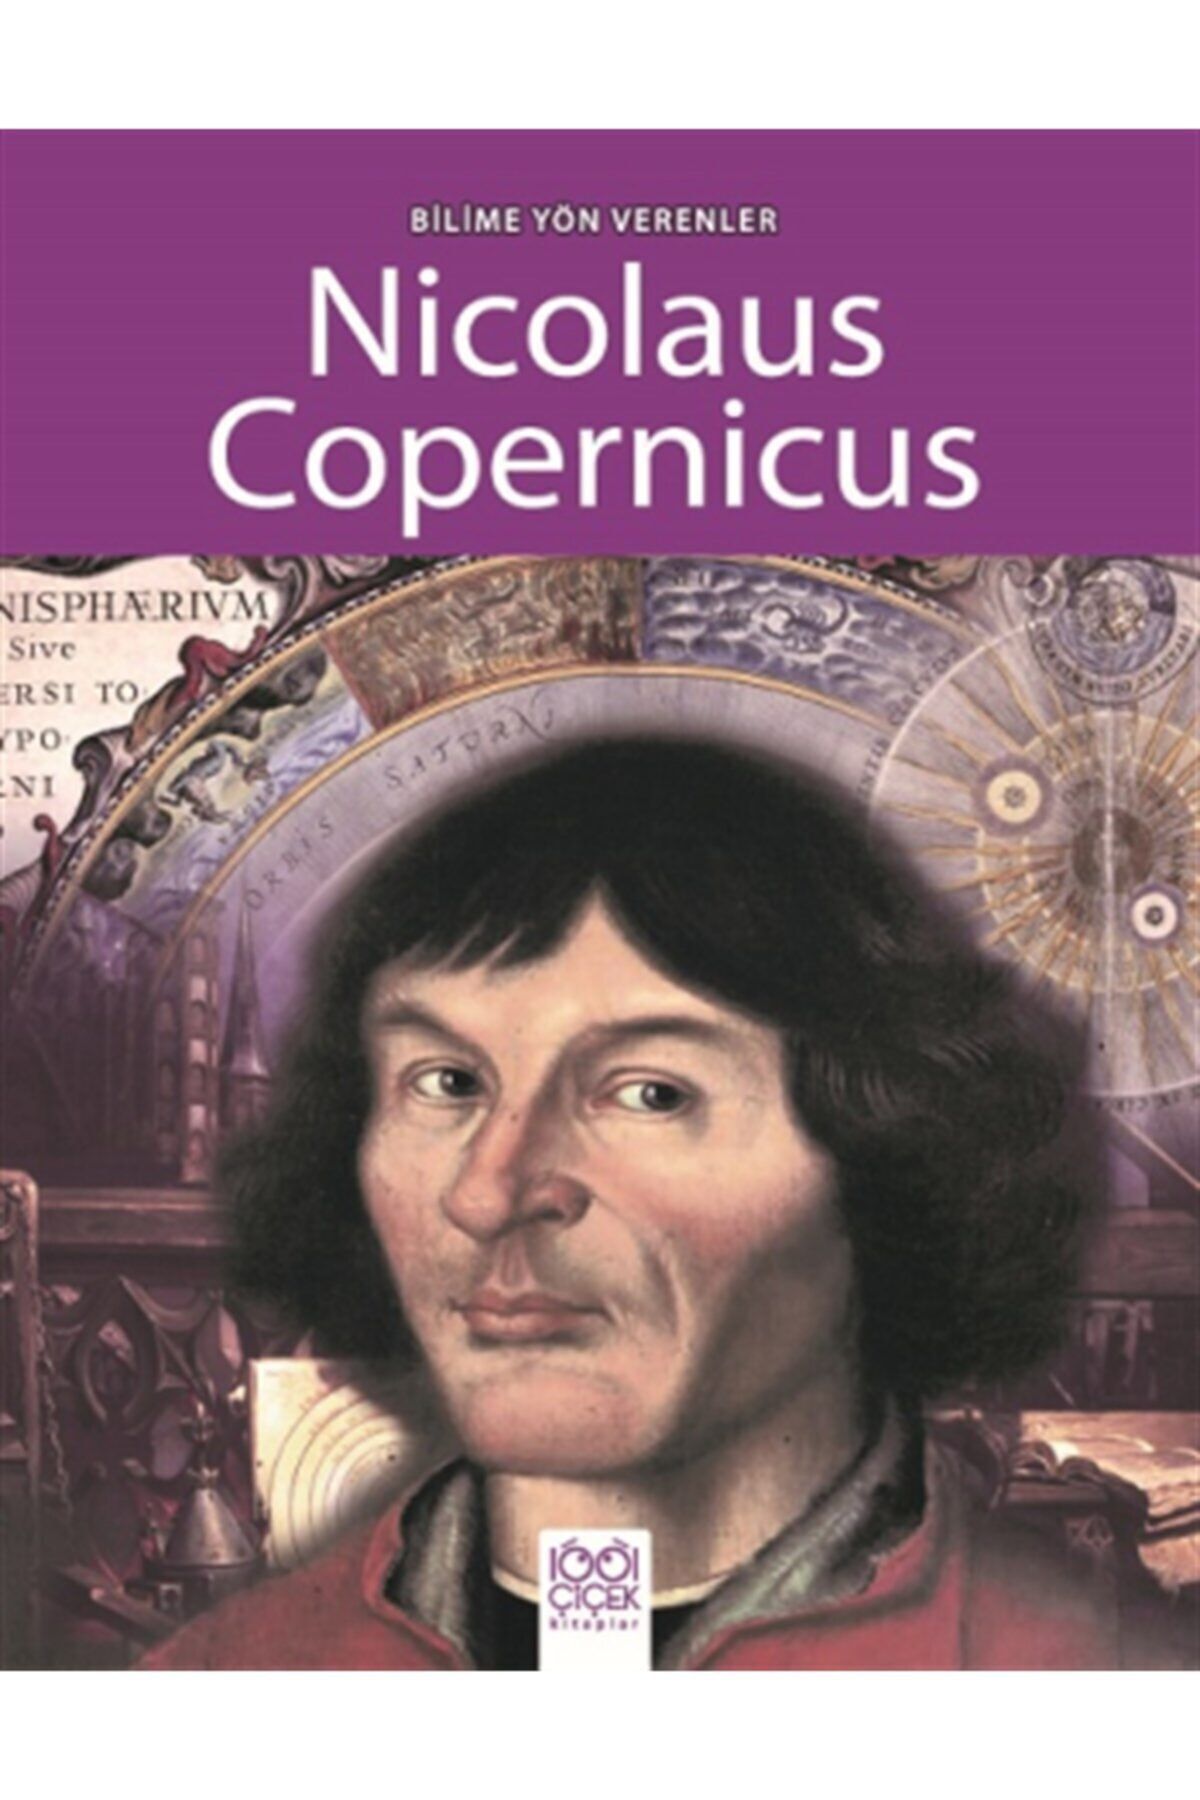 Yapı Kredi Yayınları Bilime Yön Verenler Serisi - Nicolaus Copernicus (super Scientists - Nicolaus Copernicus)